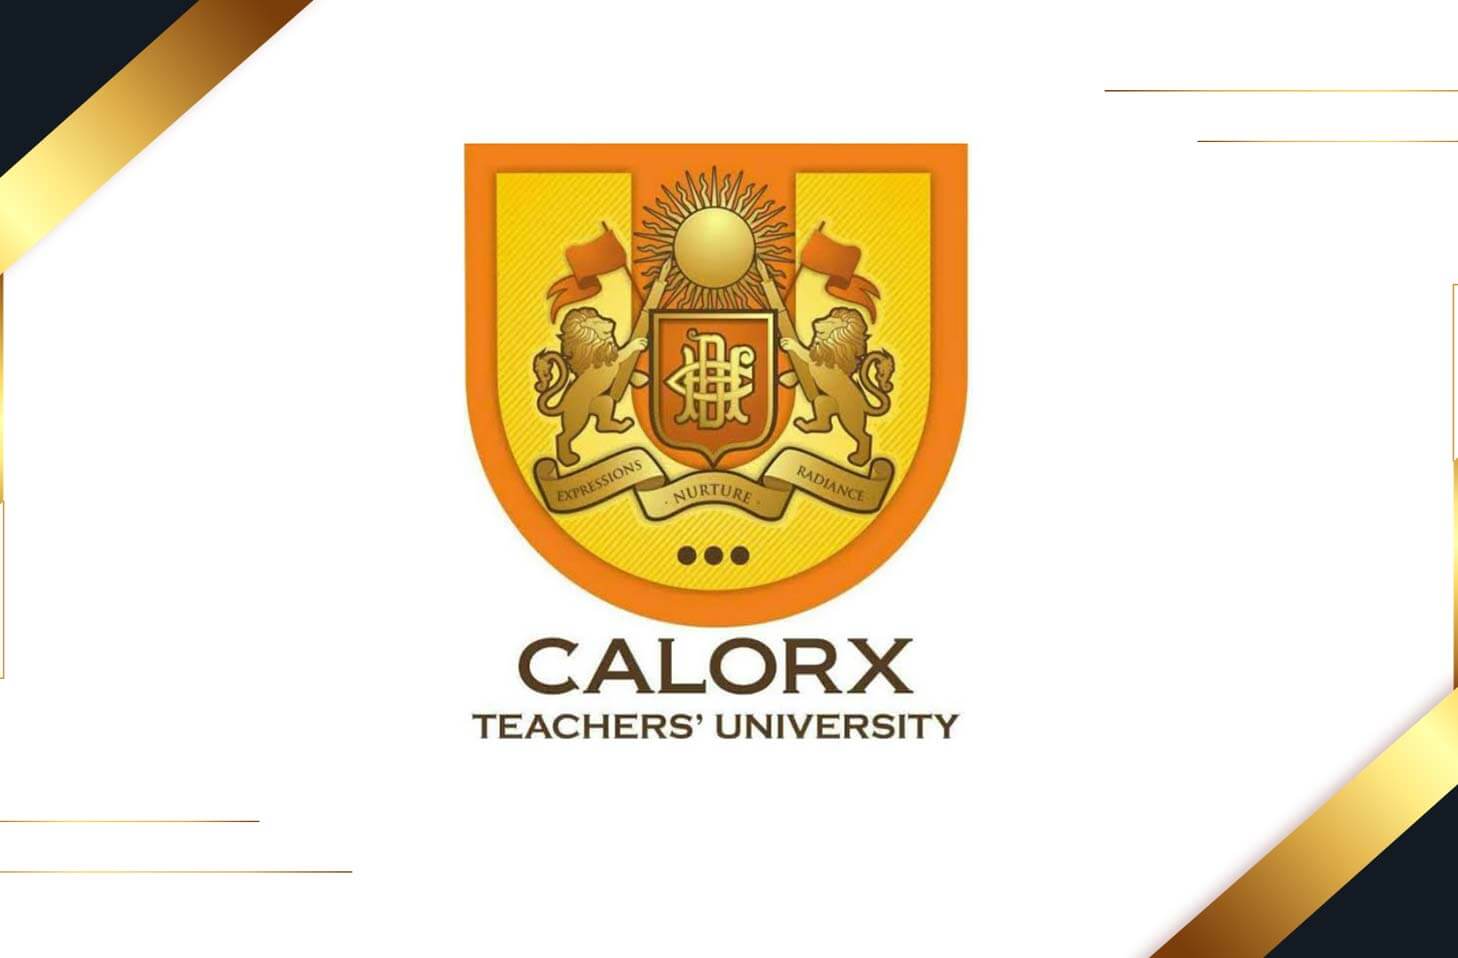 Calorx Teachers’ University